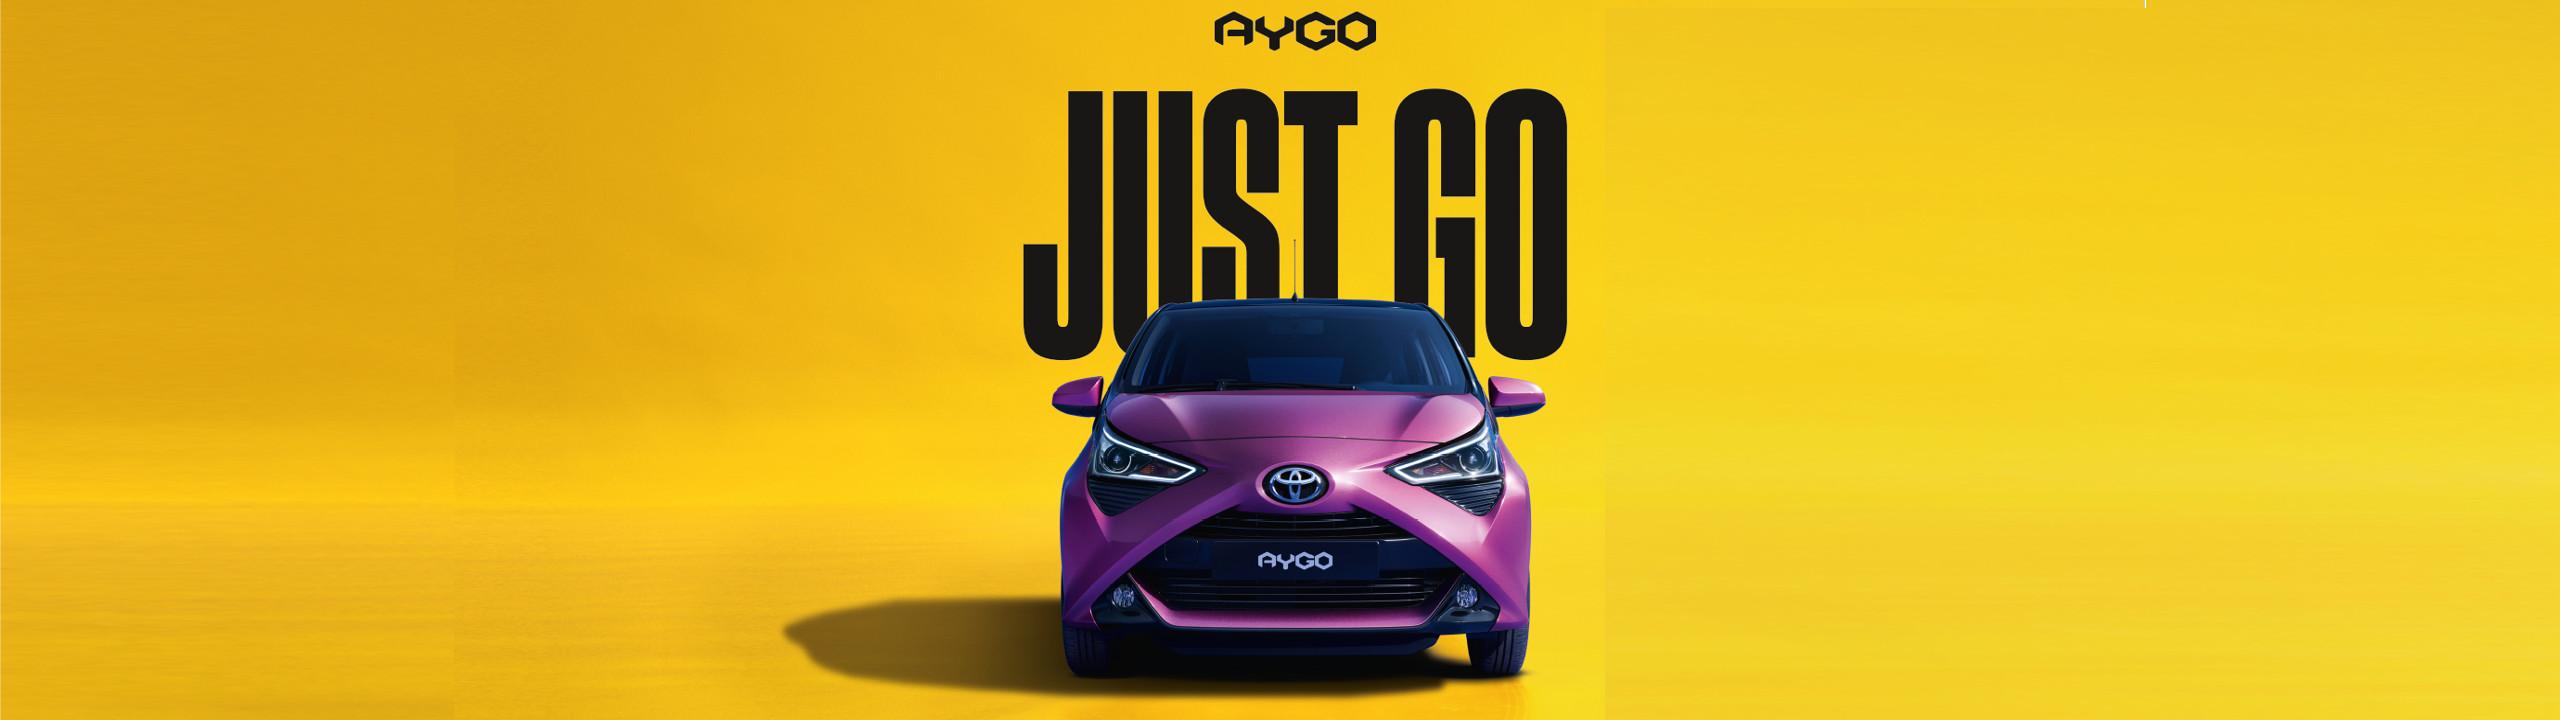 Der neue Toyota Aygo 2018 vor gelbem Hintergrund